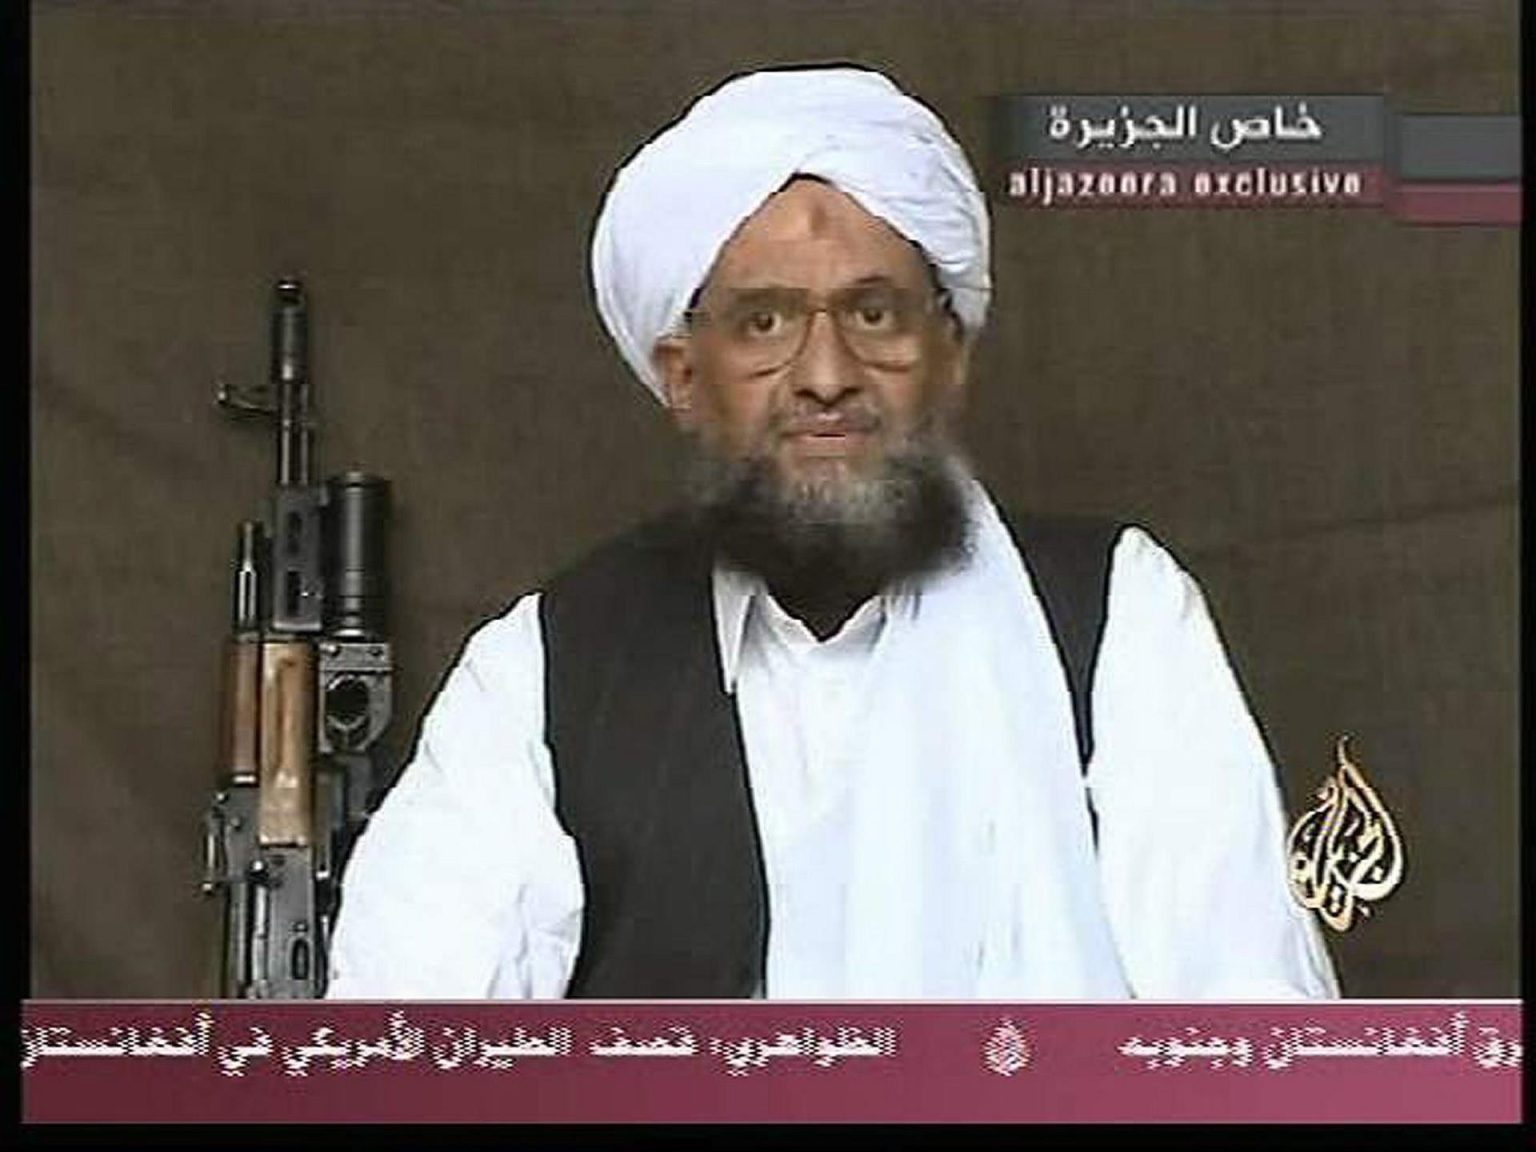 Fotografía de archivo del 9 de septiembre de 2004 que muestra una captura a una cinta de vídeo en la que aparece Ayman al-Zawahiri, entonces mano derecha de Osama bin Laden, durante una transmisión en Al-Jazeera TV desde una locación no revelada. EFE/ Ho / Al Jazeera ARCHIVO / EL LOGOTIPO DE AL JAZEERA NO DEBE SER RECORTADO O BLOQUEADO DE LA FOTO / SÓLO USO EDITORIAL/SÓLO DISPONIBLE PARA ILUSTRAR LA NOTICIA QUE ACOMPAÑA (CRÉDITO OBLIGATORIO)